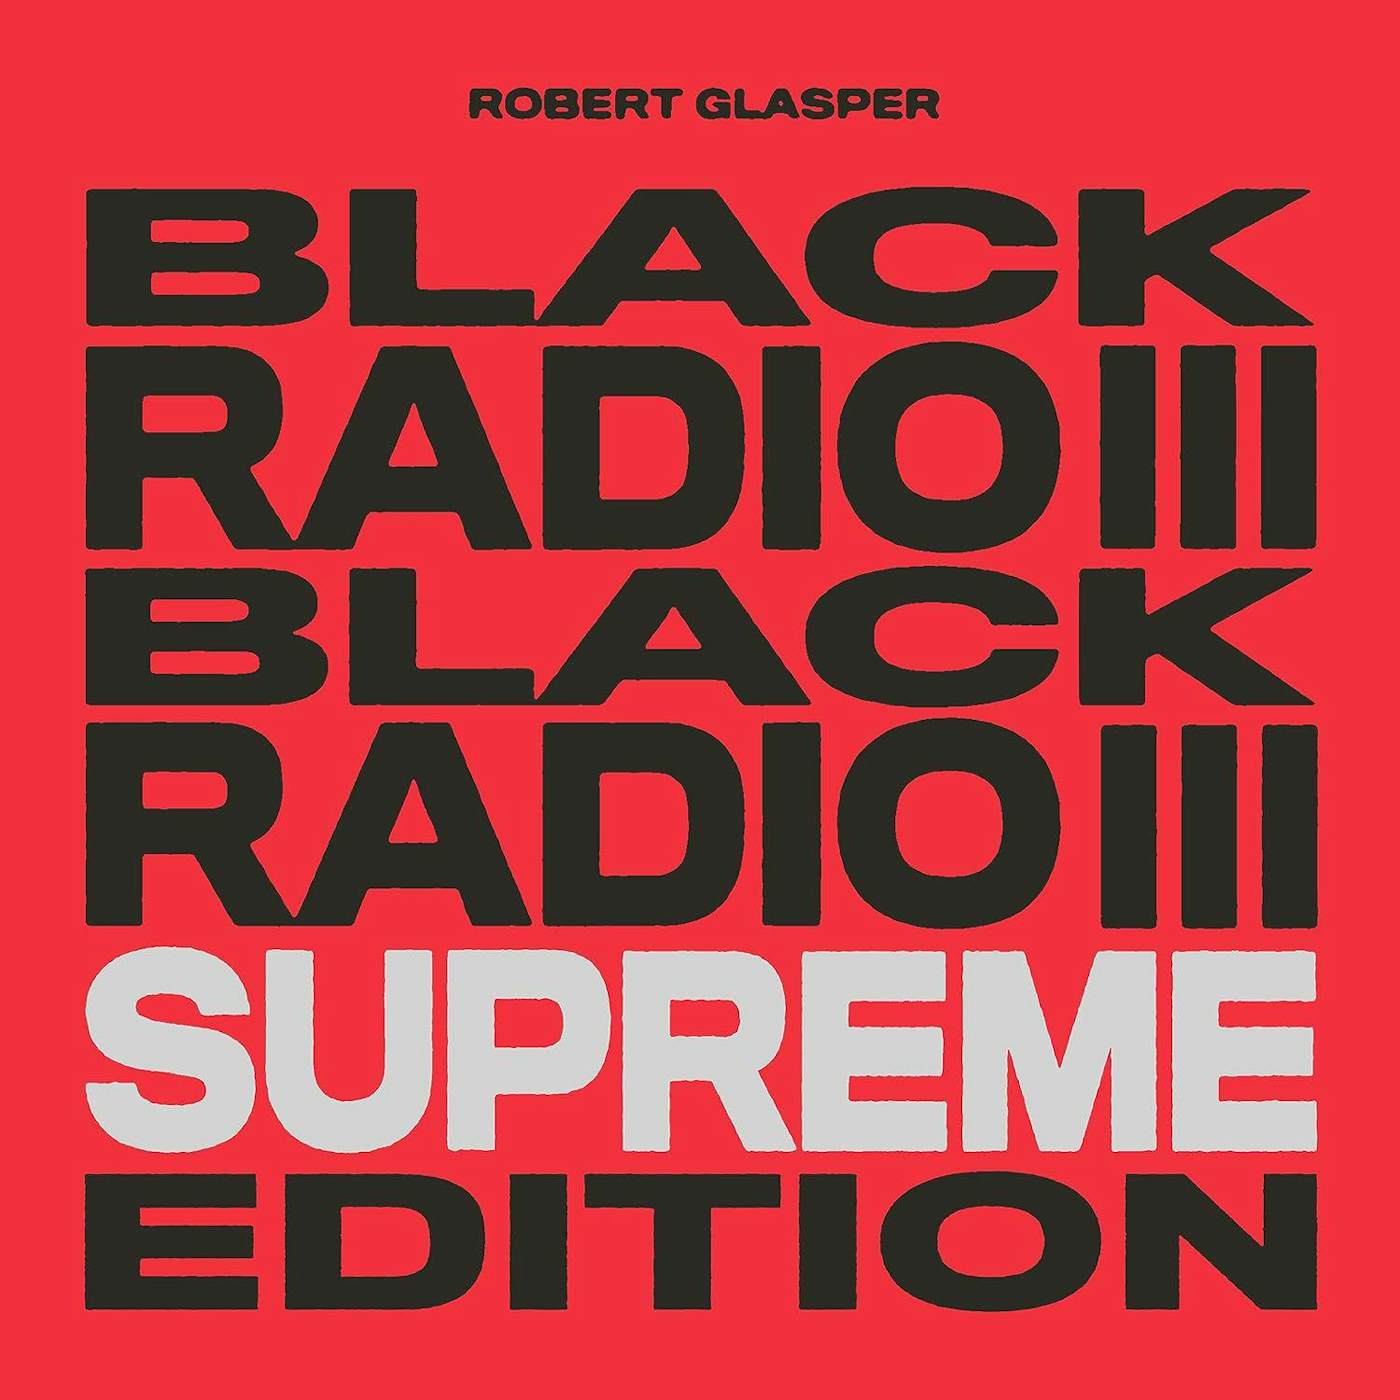 Robert Glasper Black Radio III (Supreme Edition) (Tri-Color/3LP) Vinyl Record